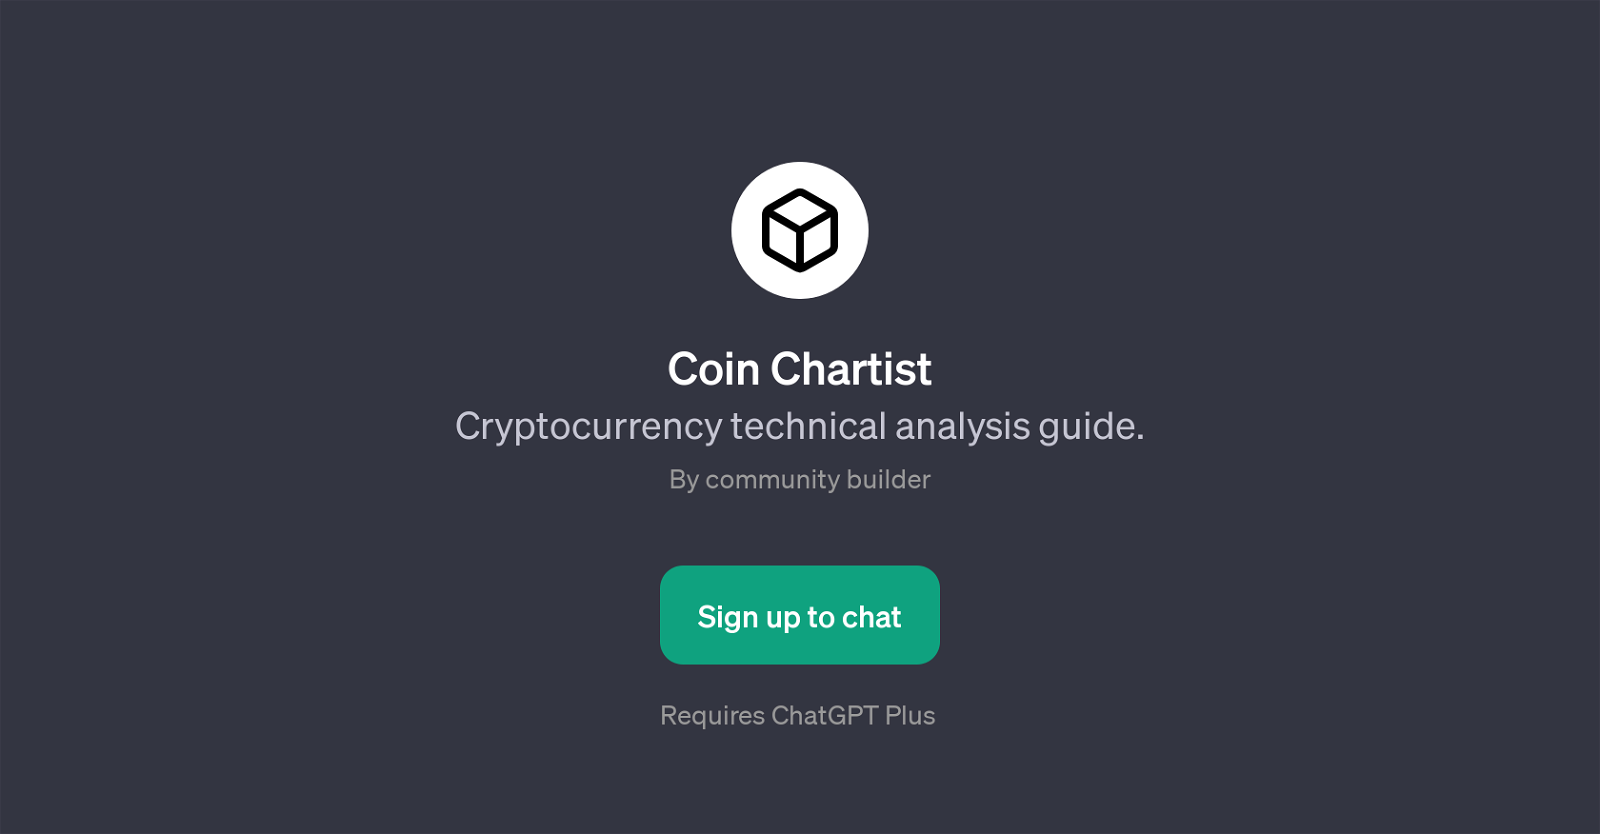 Coin Chartist website